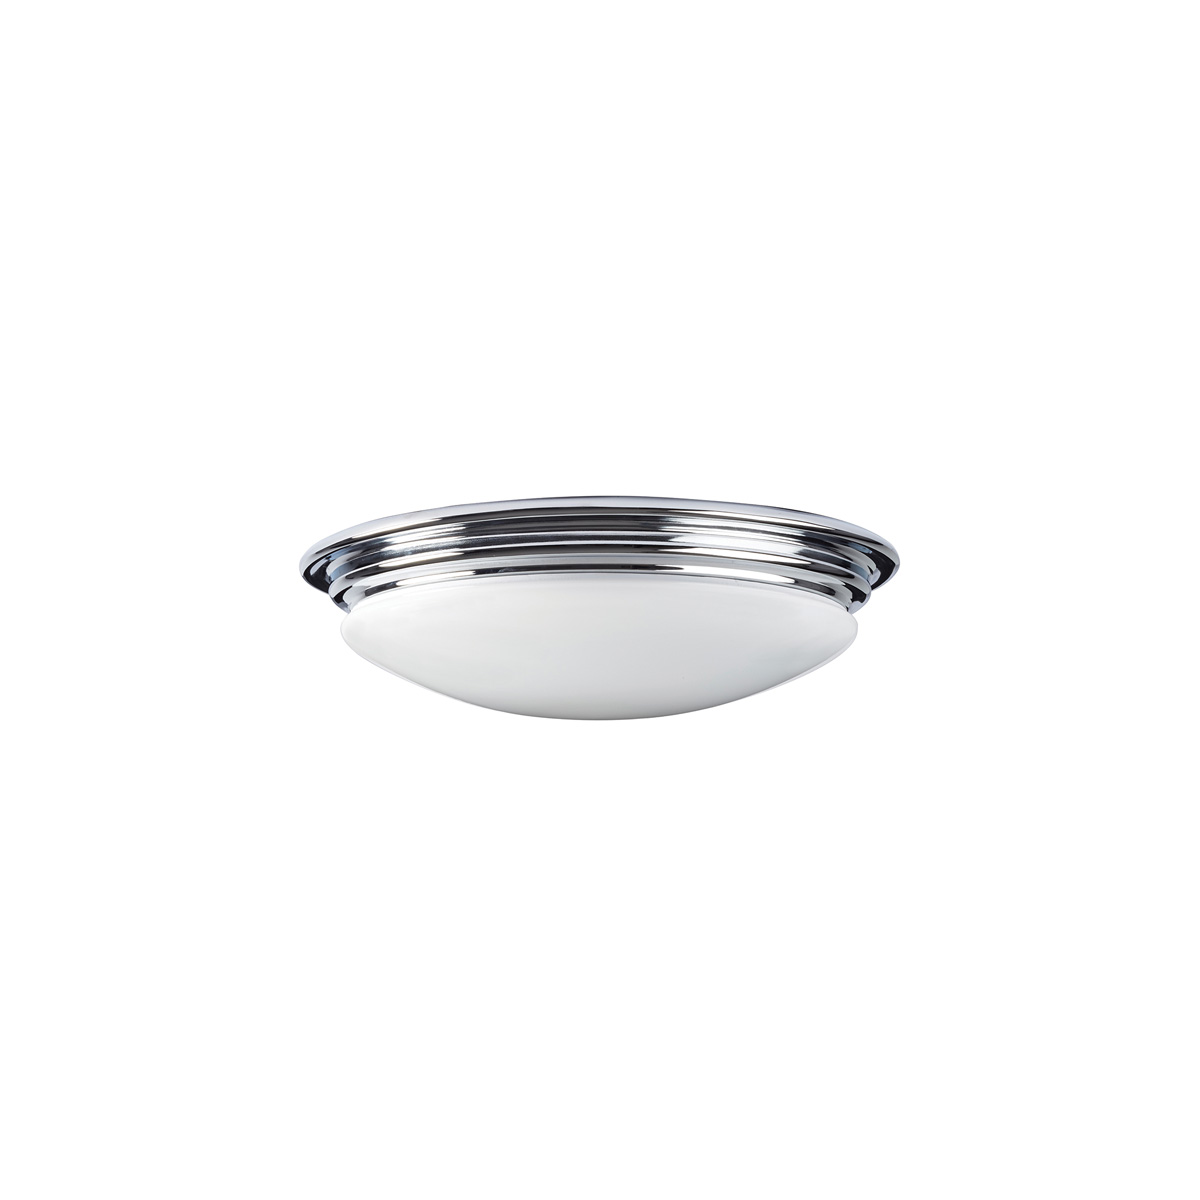 Потолочный светильник для ванных комнат BATH-BROMPTON-F, Потолочные светильники для ванных комнат Классический | Хром/Никель Белый/Бежевый | Ванная комната.